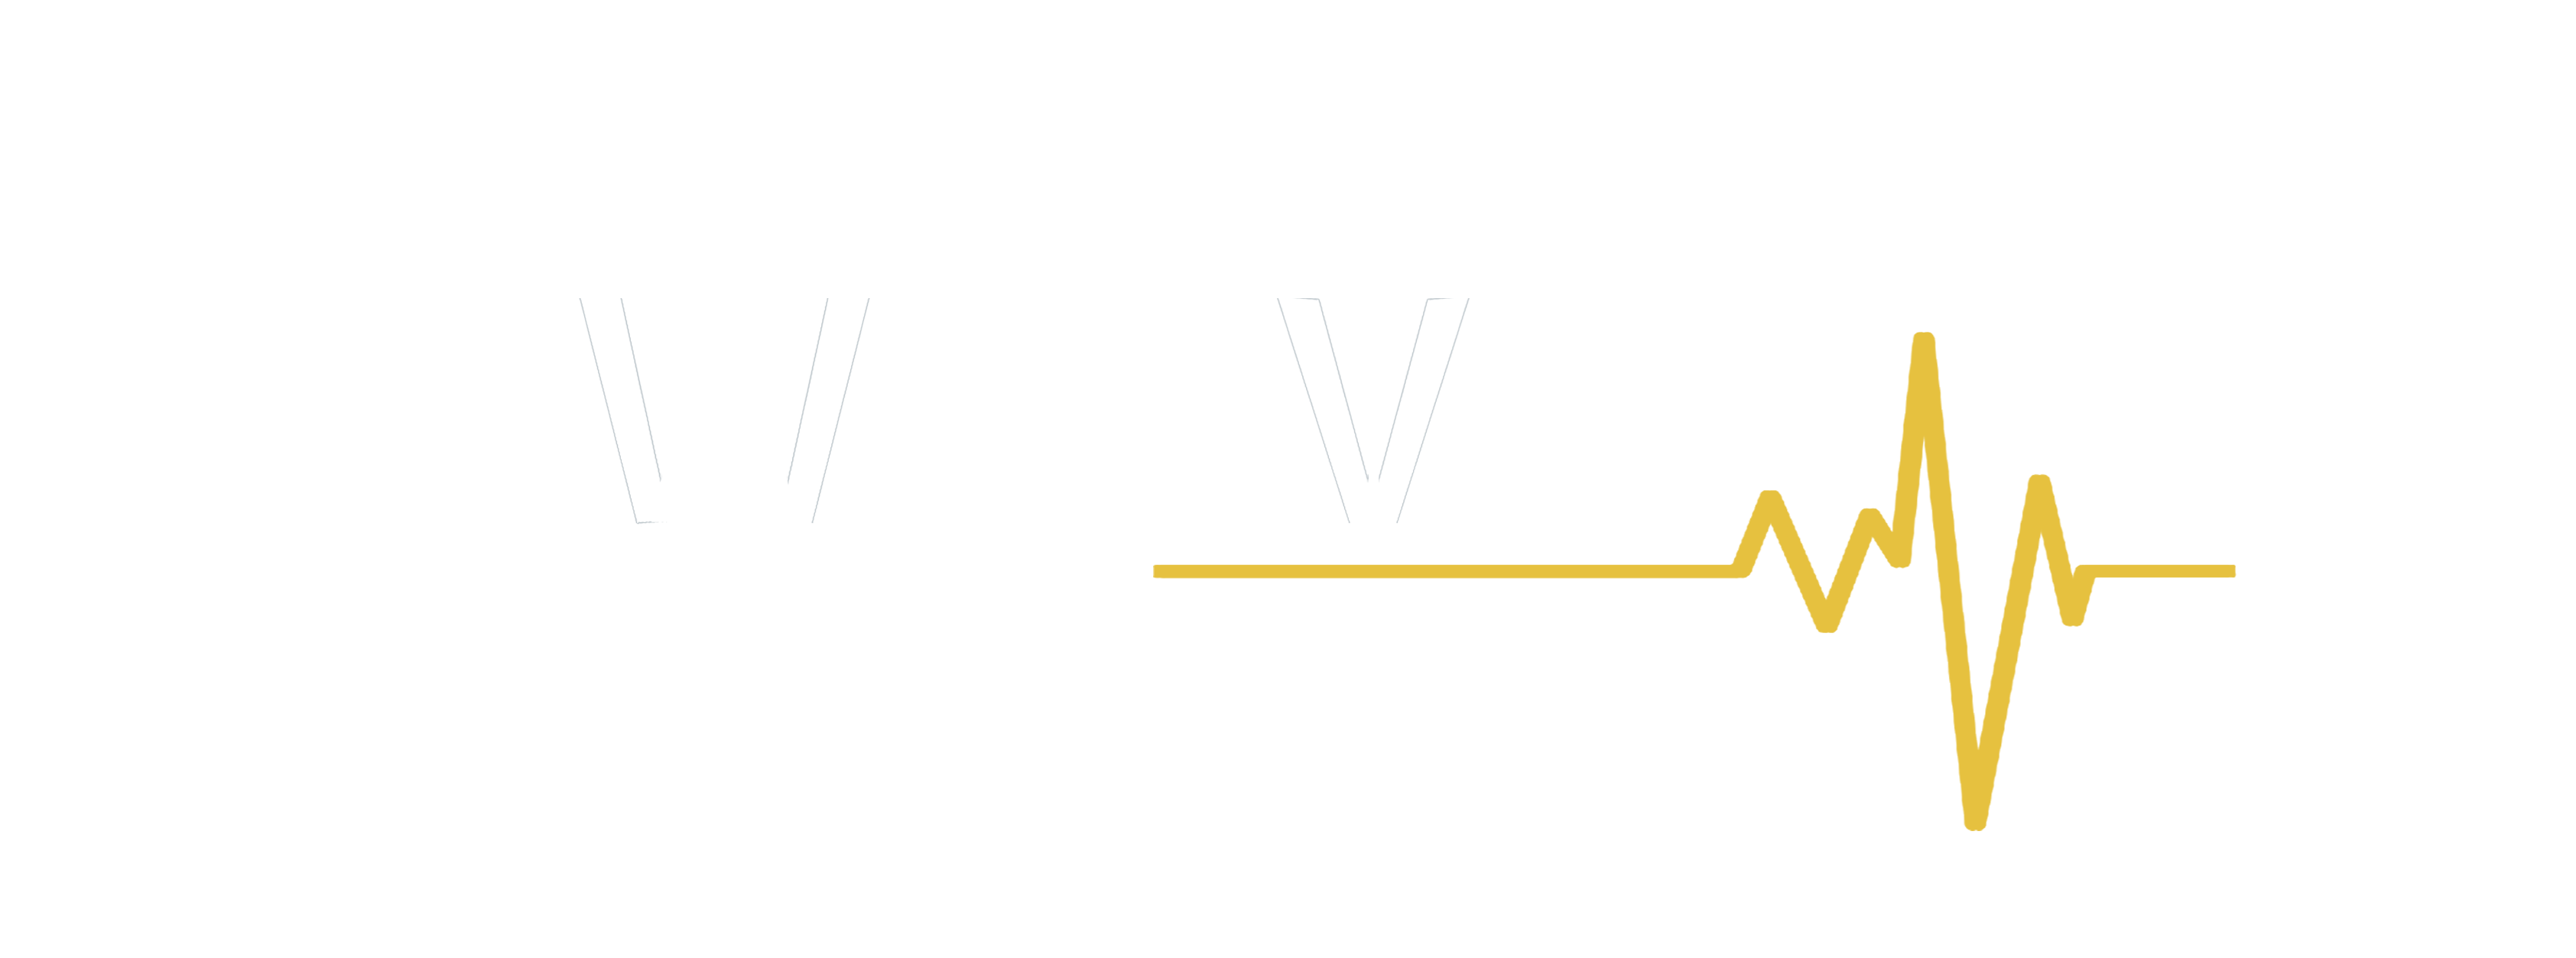 exim-wave